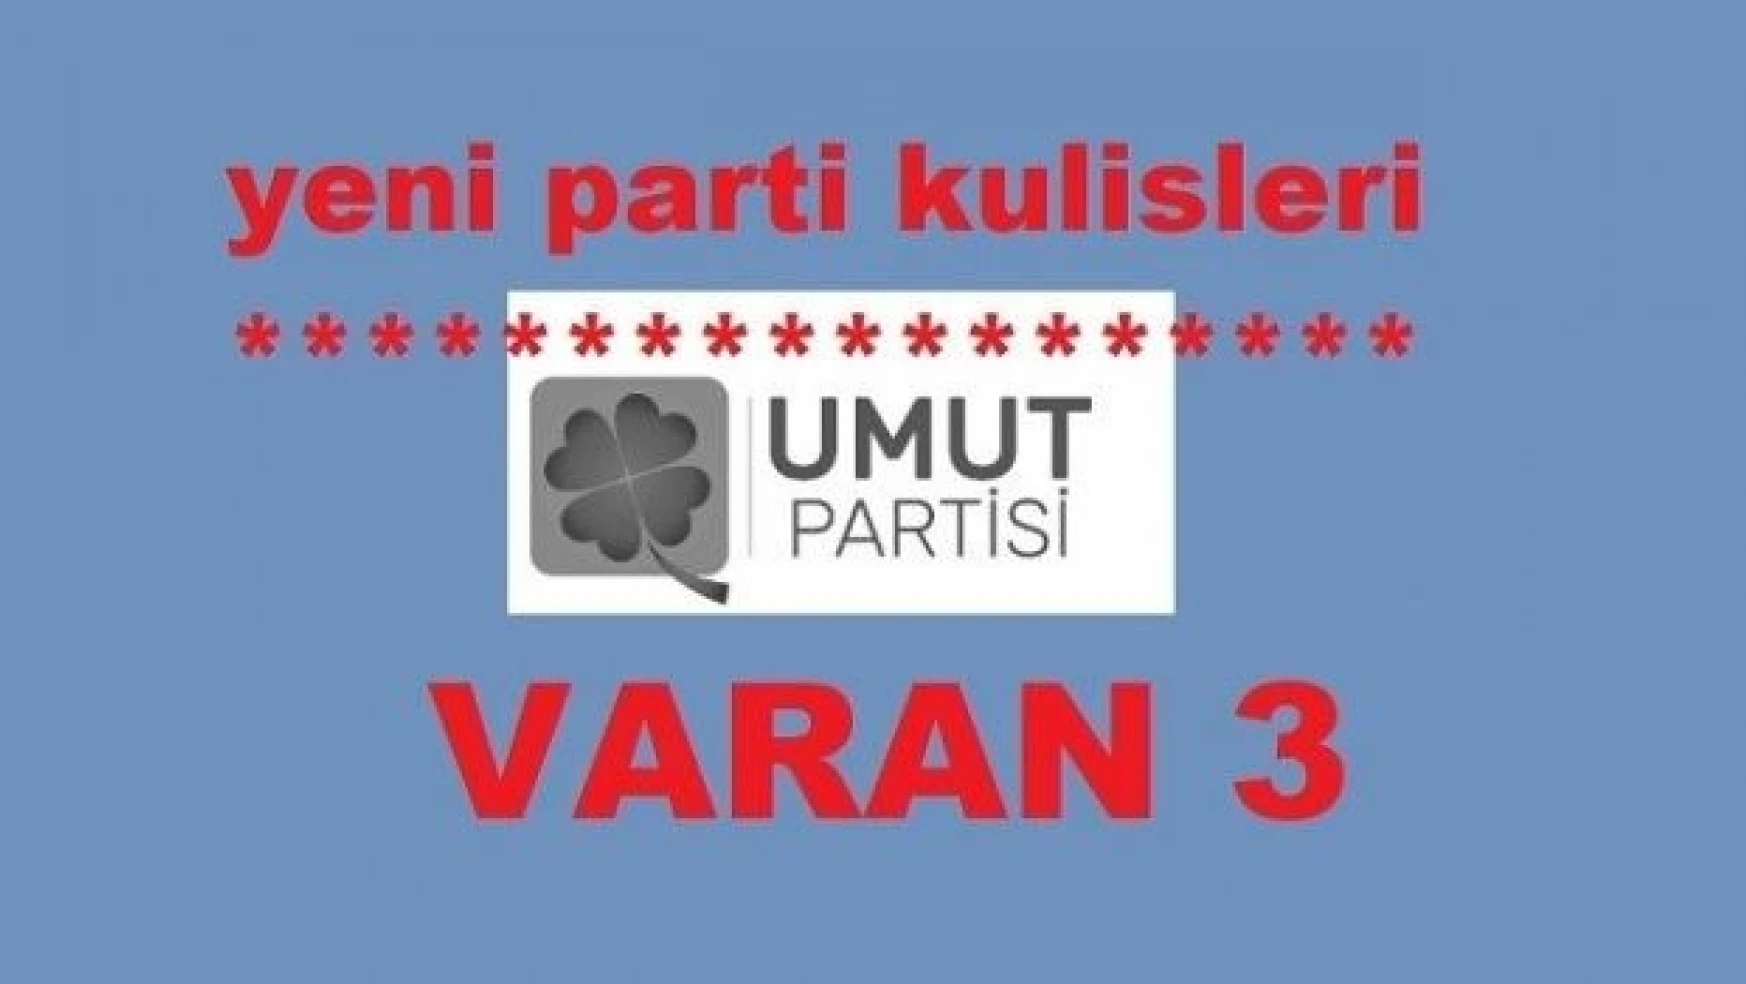 Yeni parti kulislerinde VARAN 3… UMUT PARTİSİ'nin arkasında kim ya da kimler var?